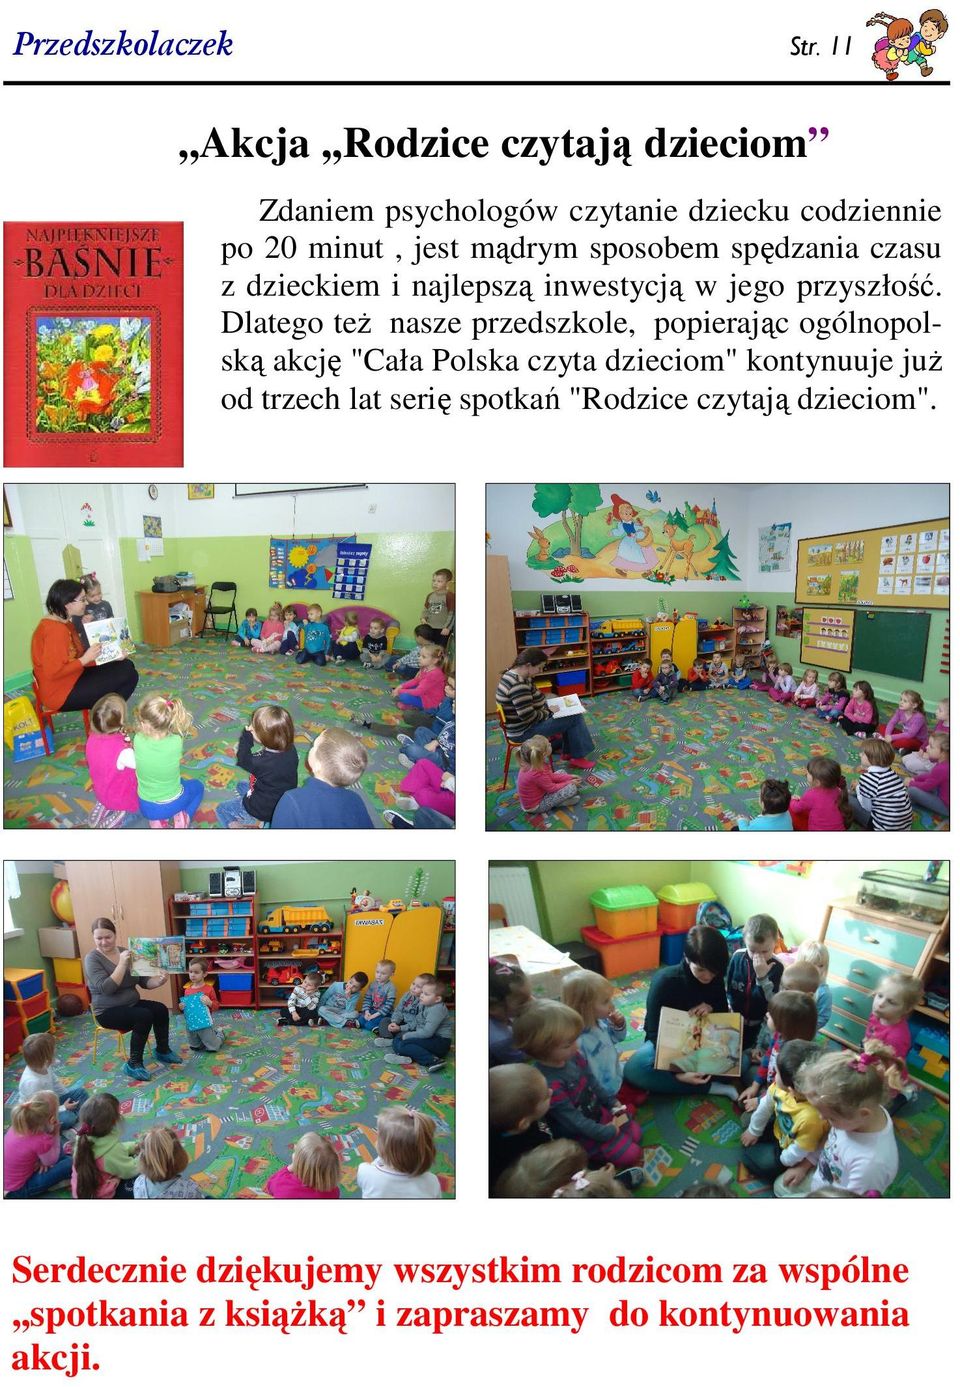 Dlatego teŝ nasze przedszkole, popierając ogólnopolską akcję "Cała Polska czyta dzieciom" kontynuuje juŝ od trzech